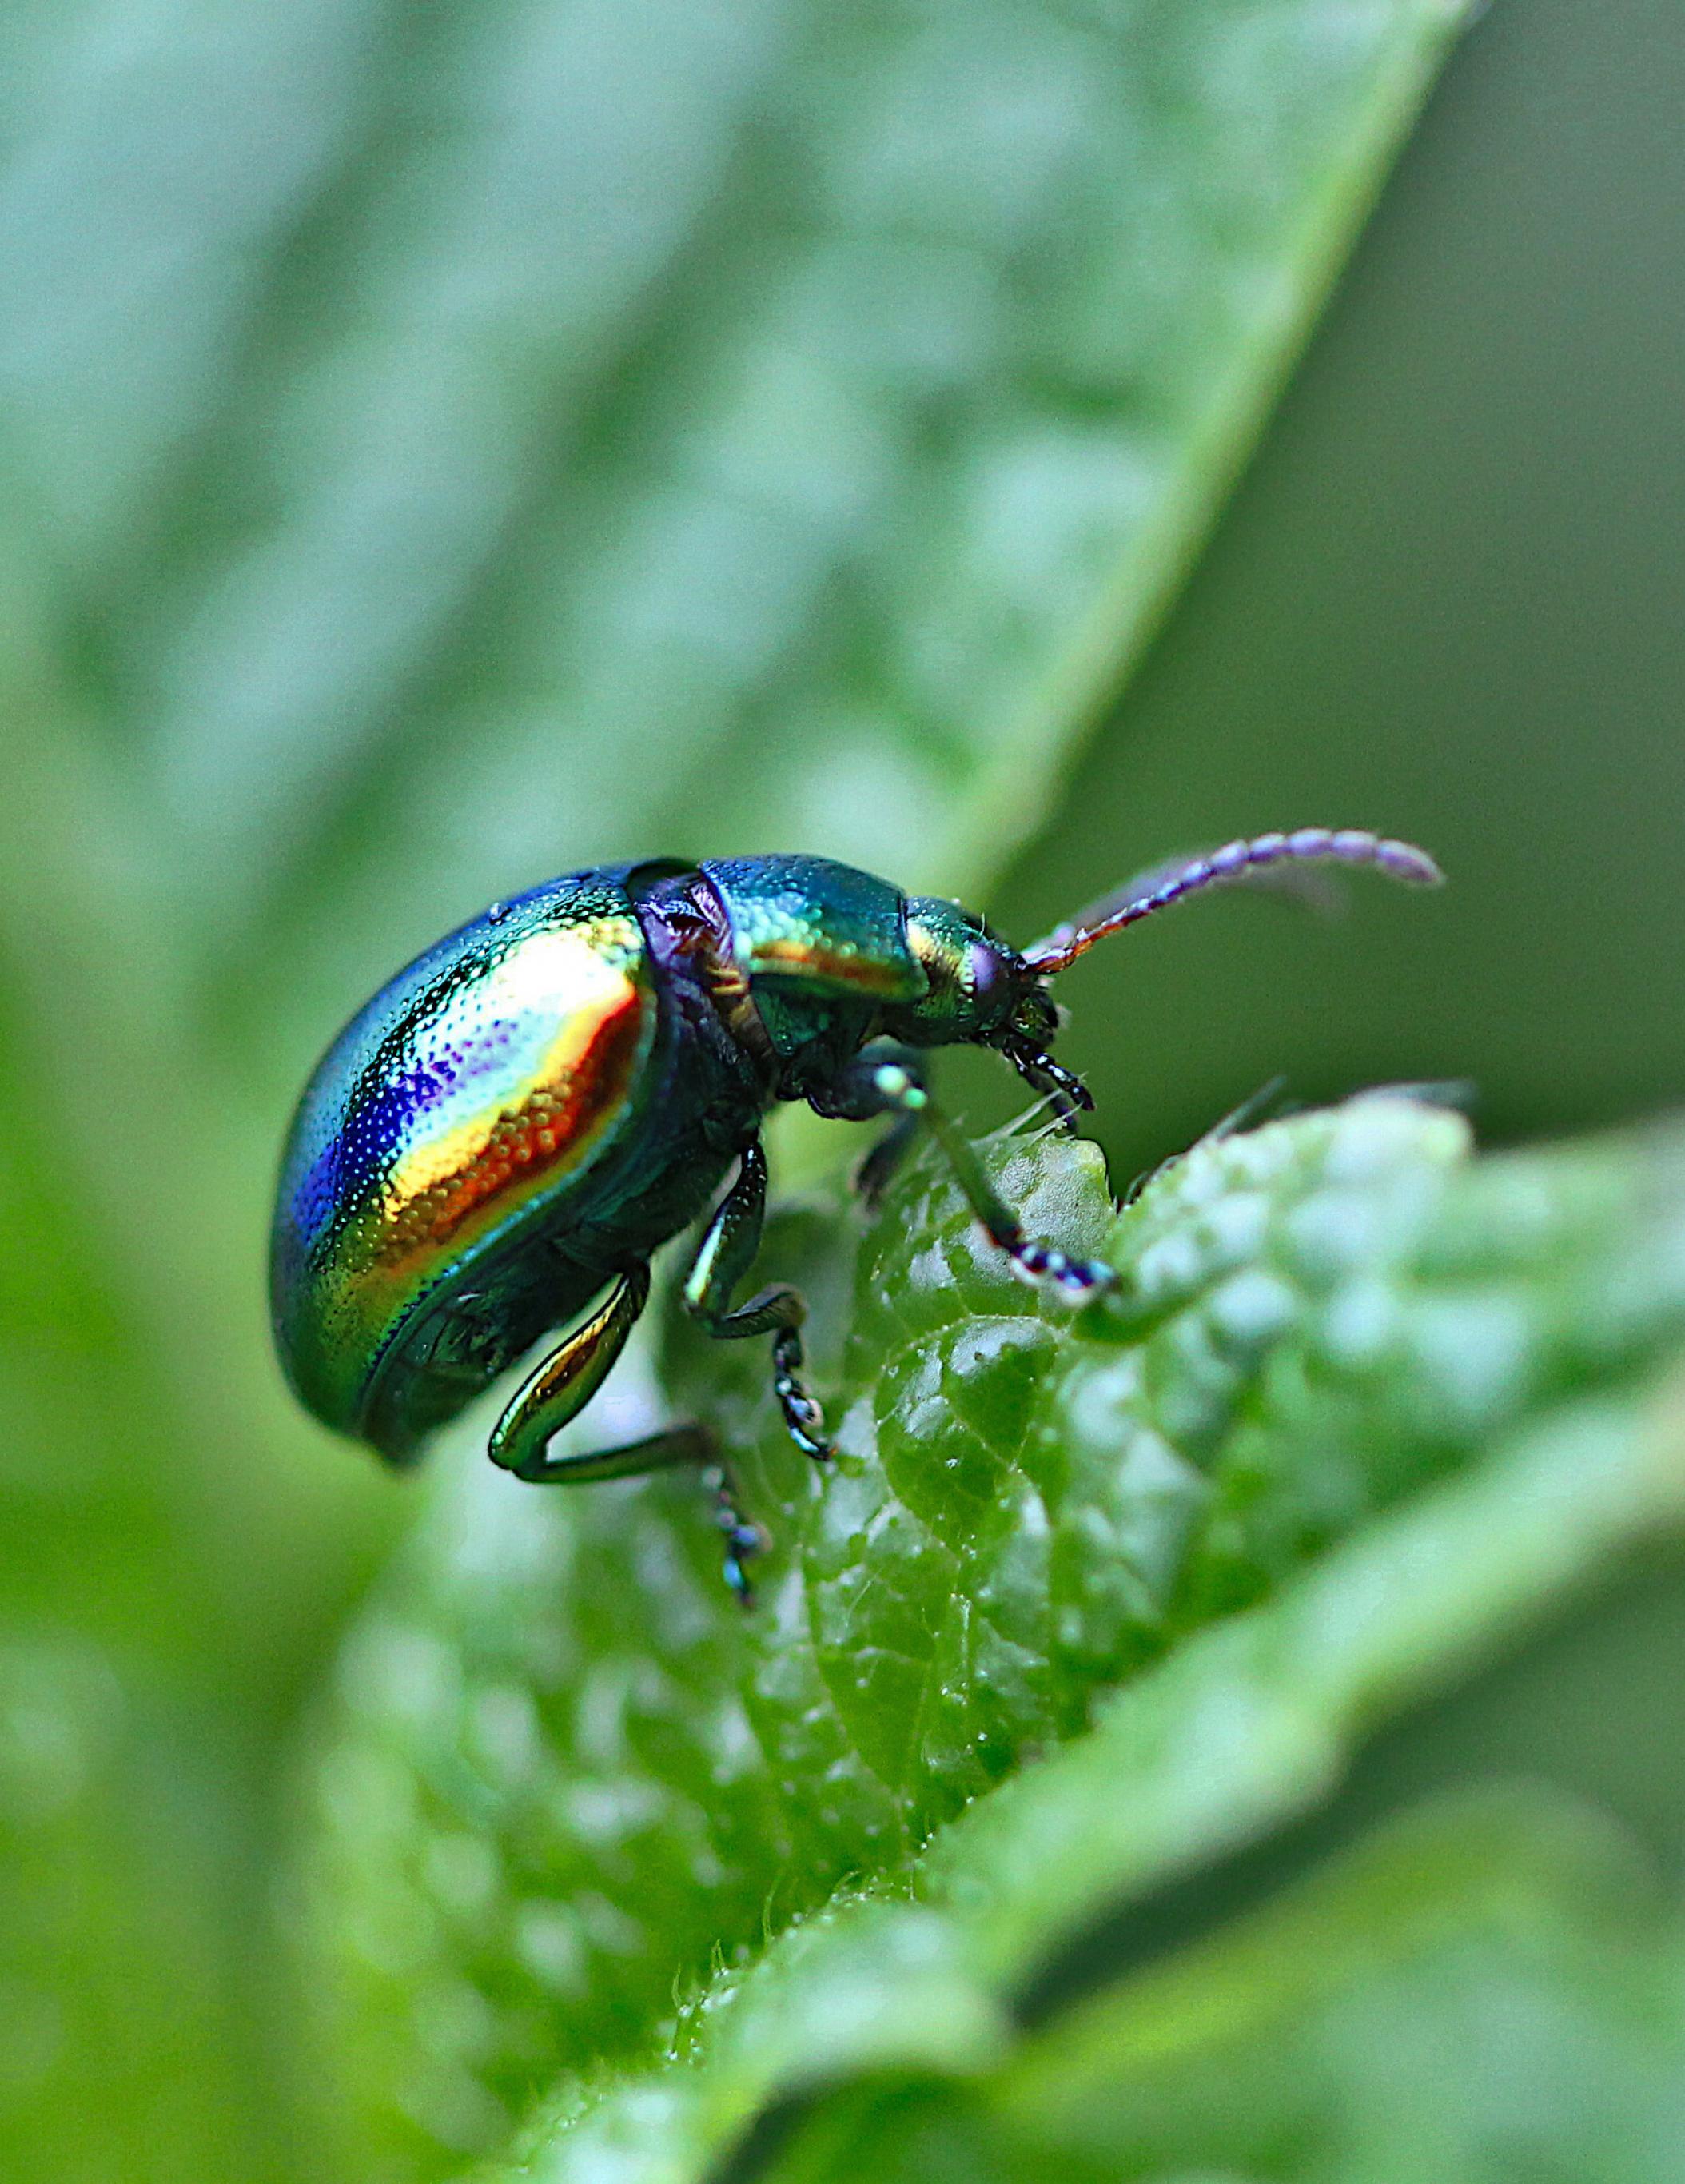 Ein metallisch gläzender, in allen Regenbogenfarben schillernder Käfer sitzt auf einem grünen Blatt.